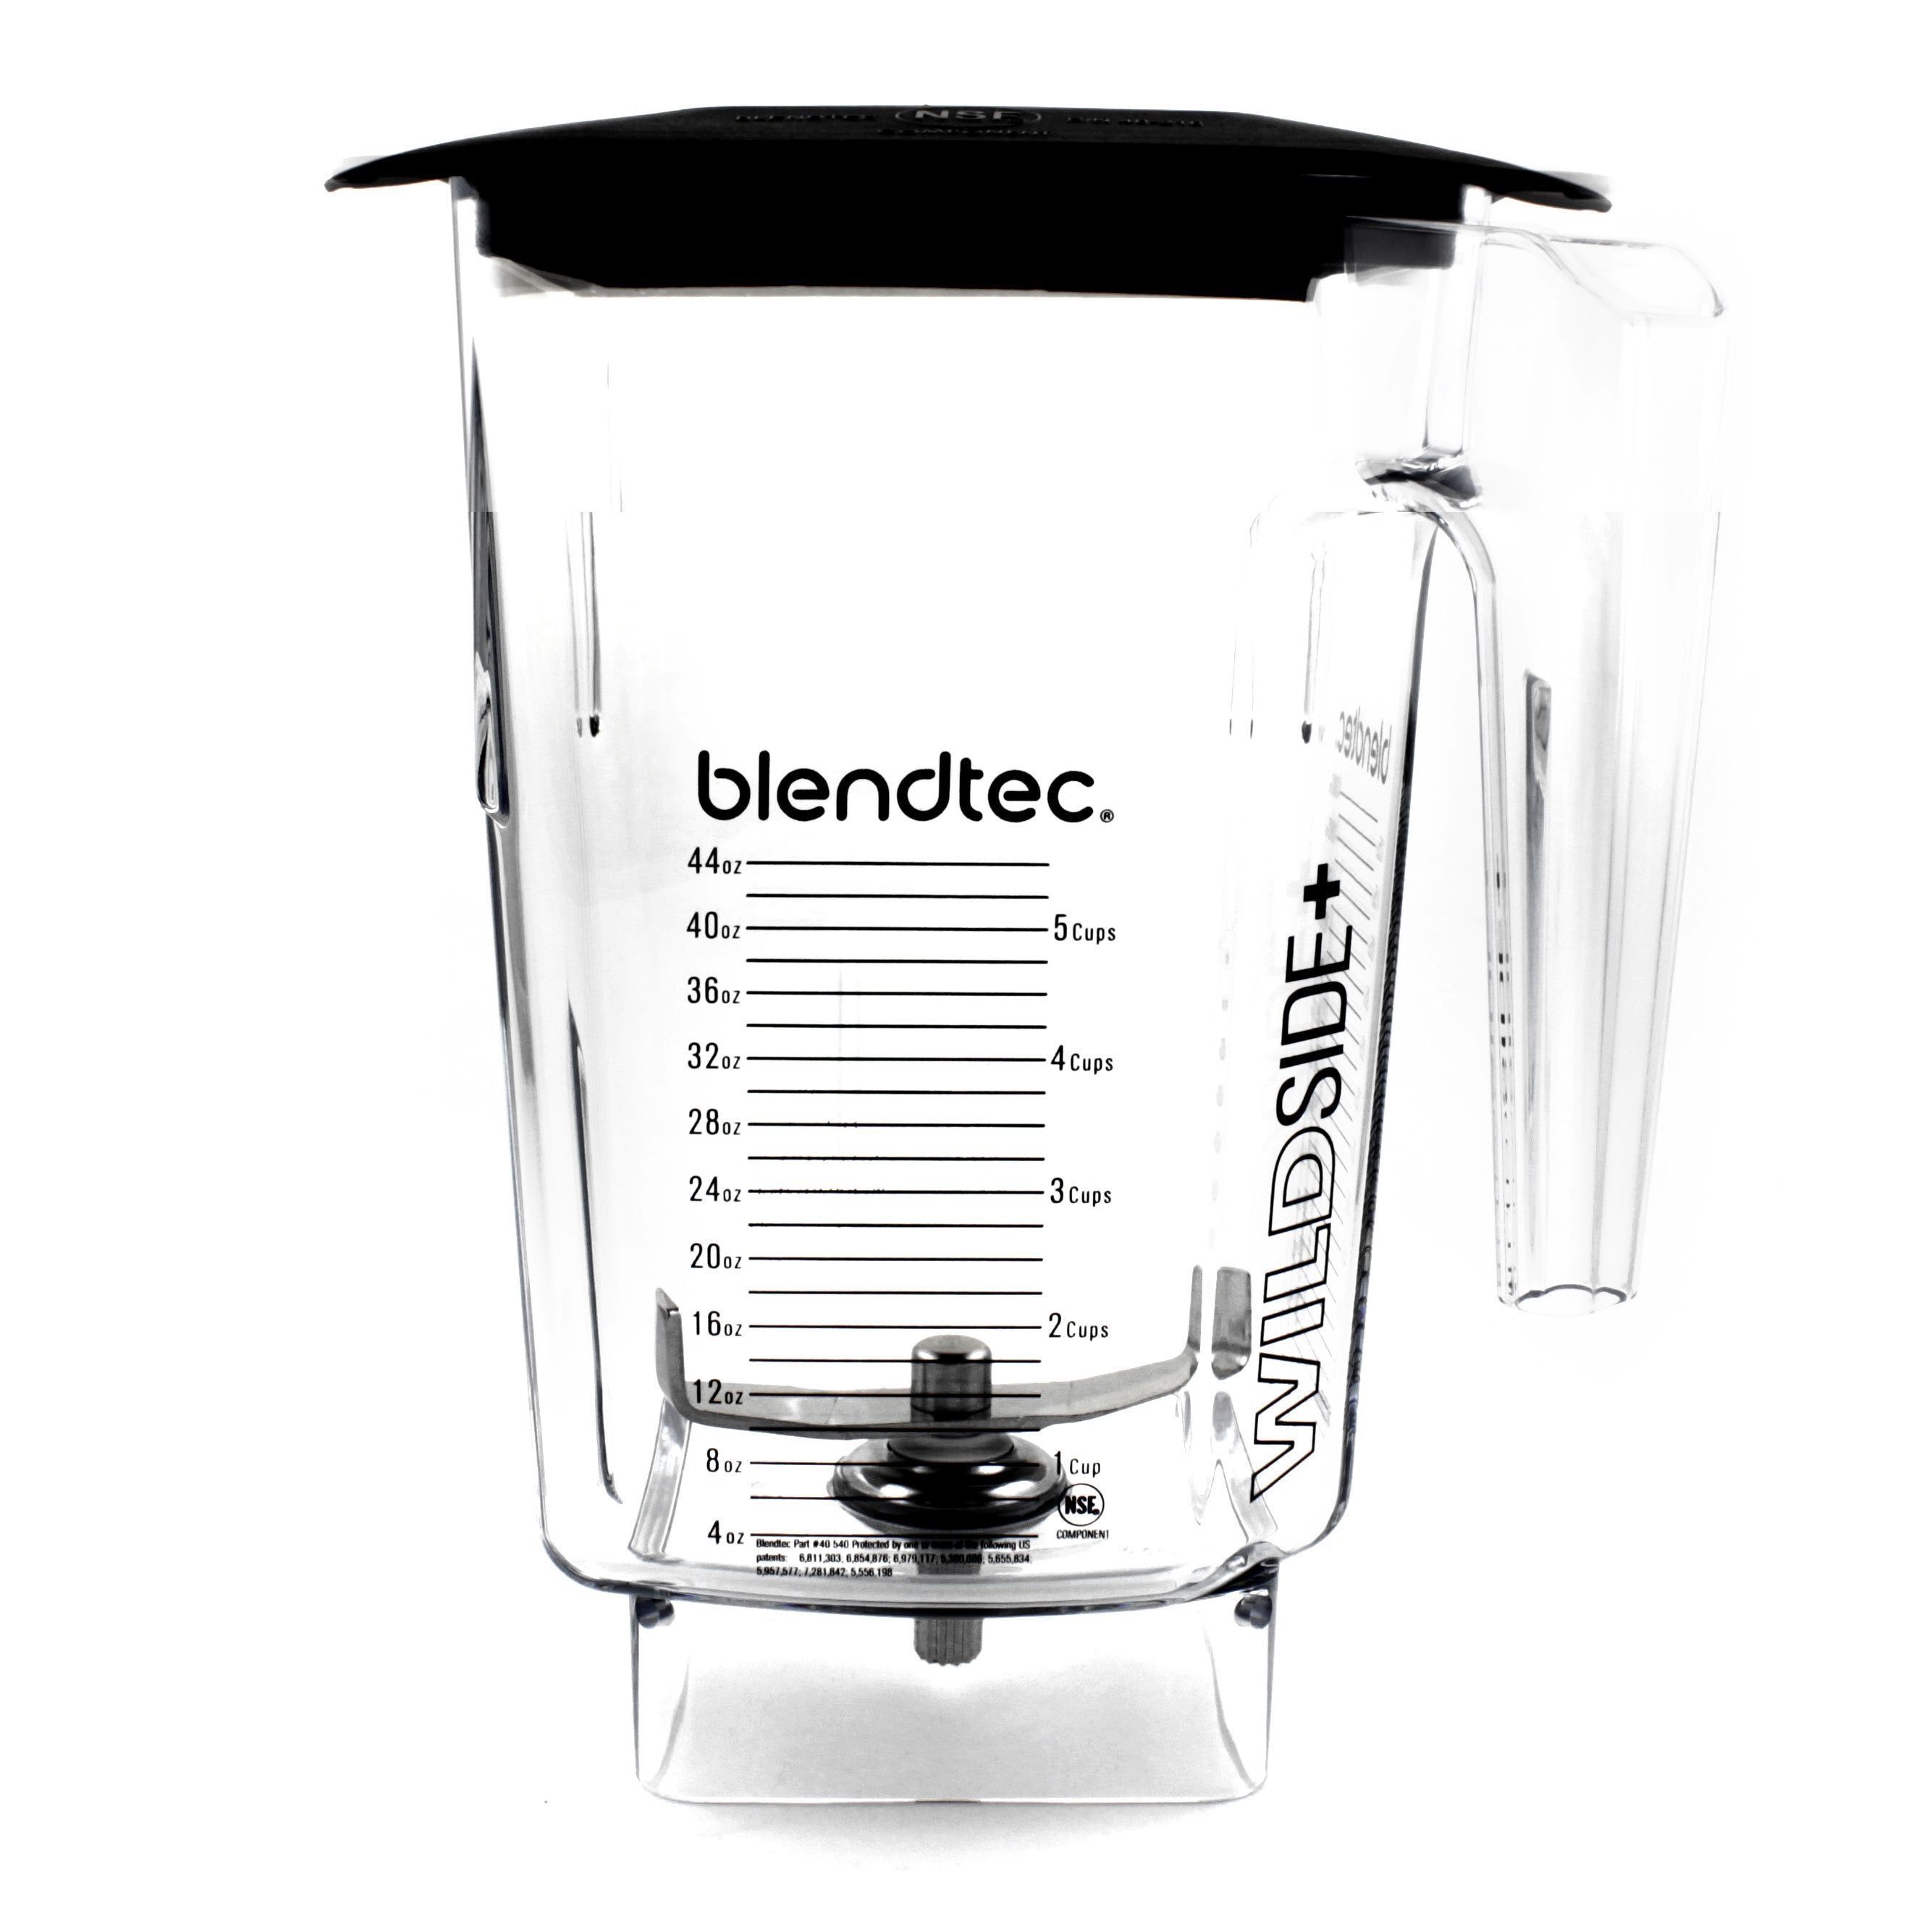 Blendtec Blender Jars - Available on